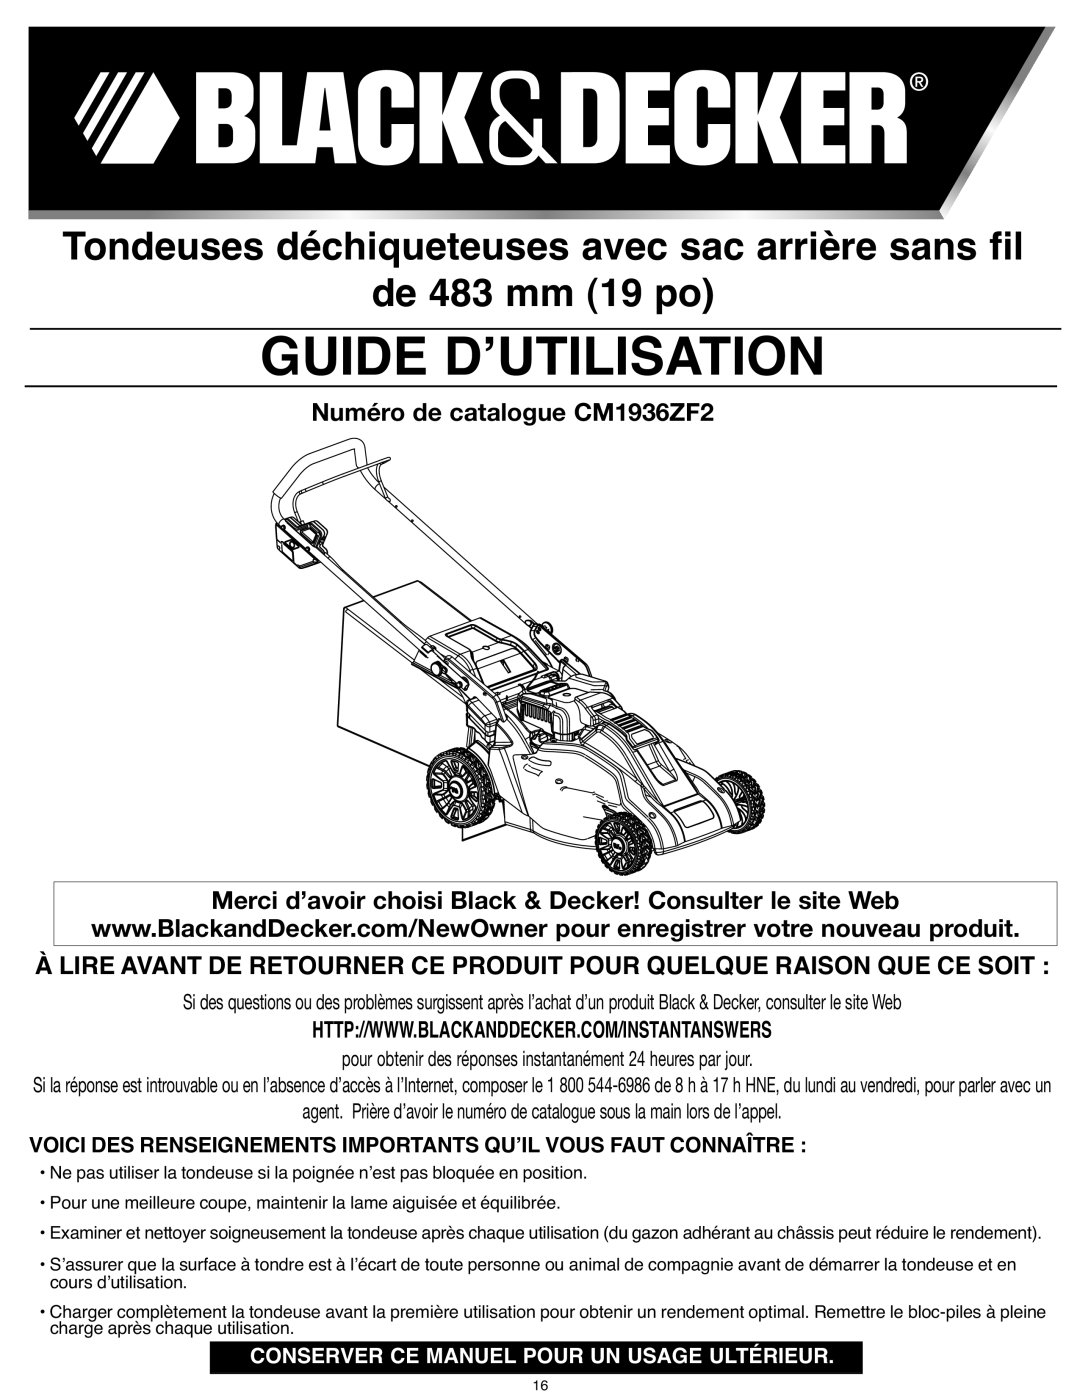 Black & Decker instruction manual Guide Dʼutilisation, de 483 mm 19 po, Numéro de catalogue CM1936ZF2 